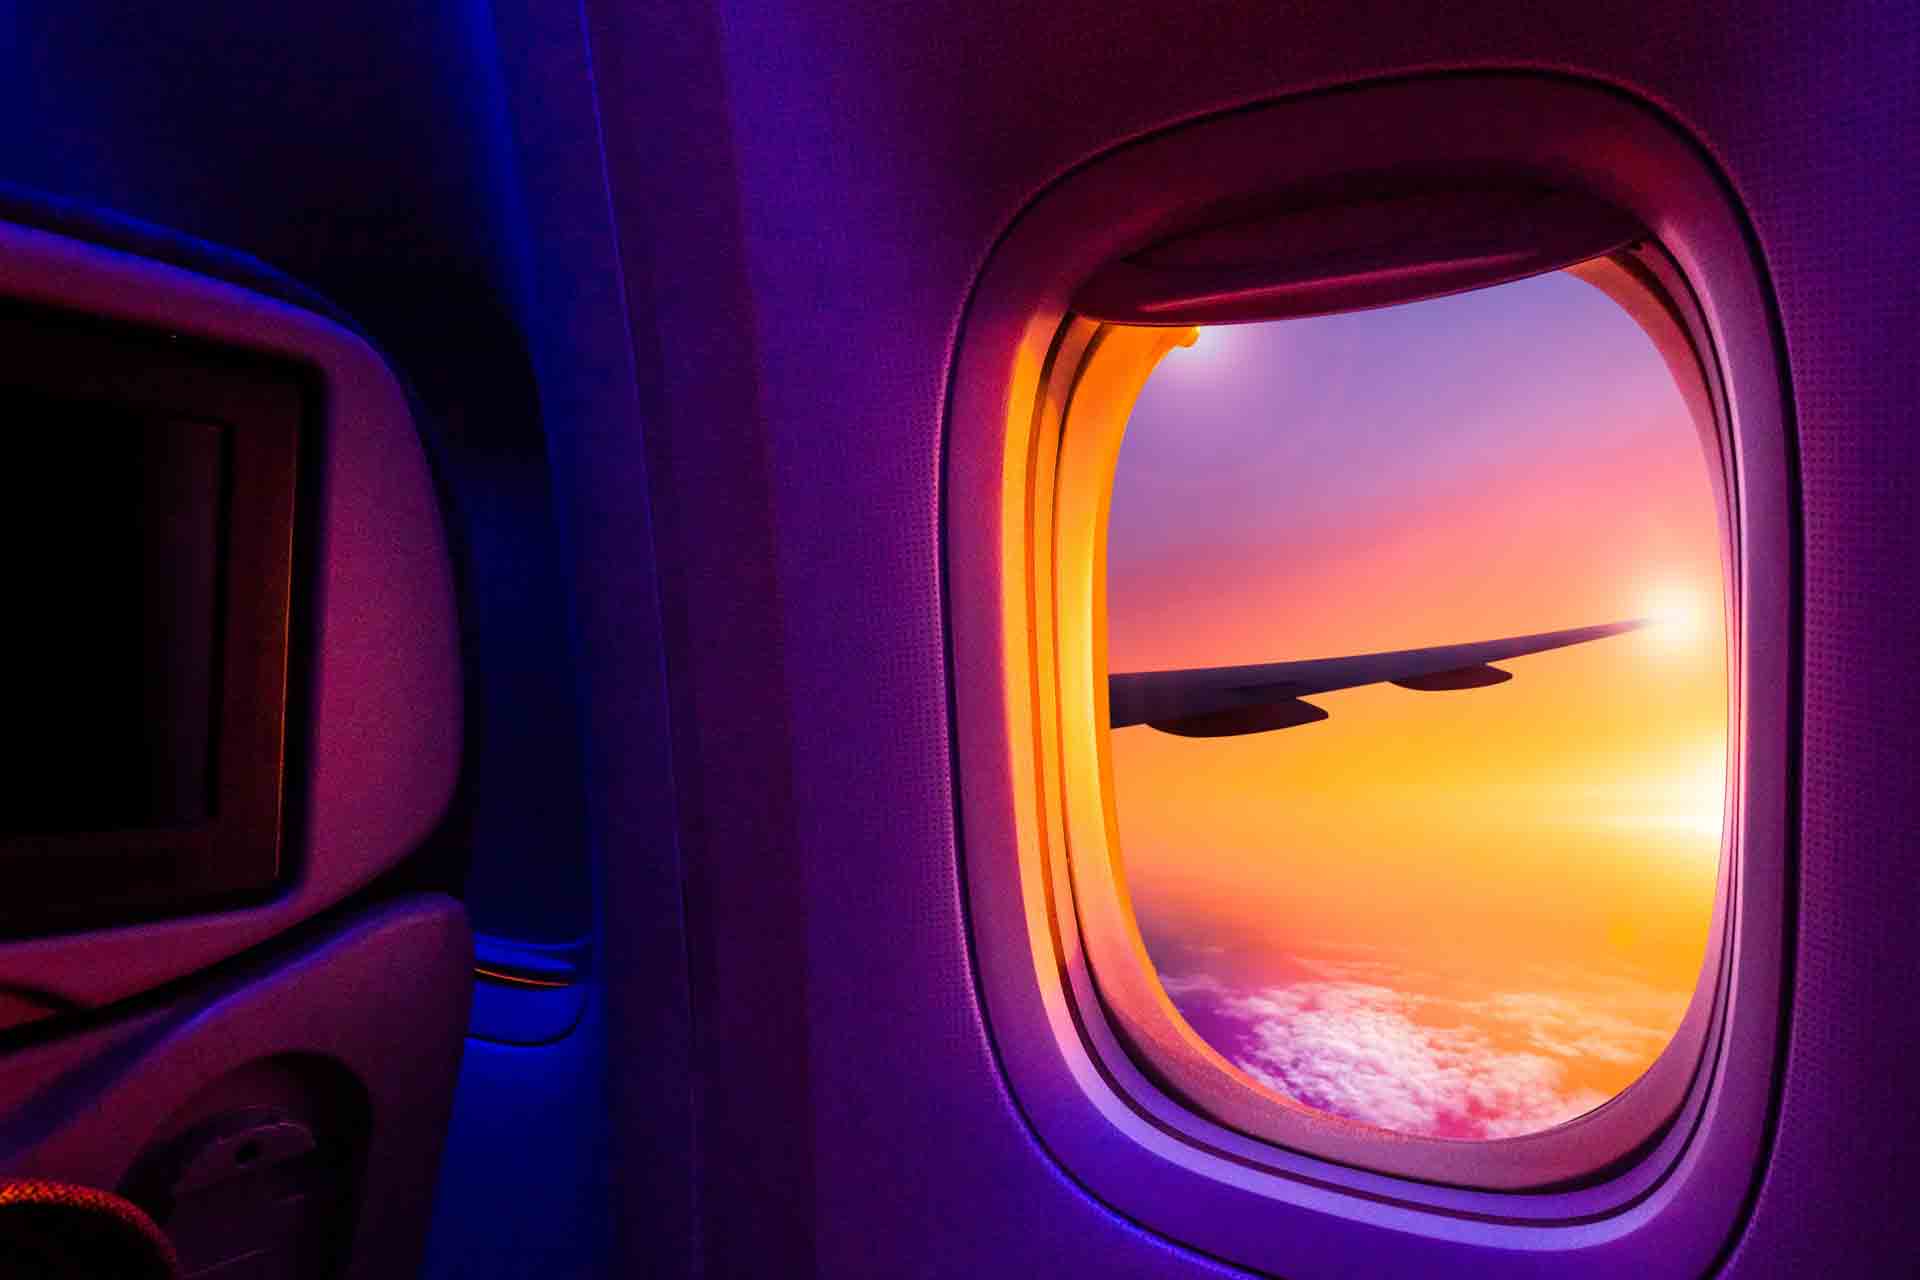 Blick aus einem Flugzeug bei Sonnenuntergang in Violett-orangem Licht